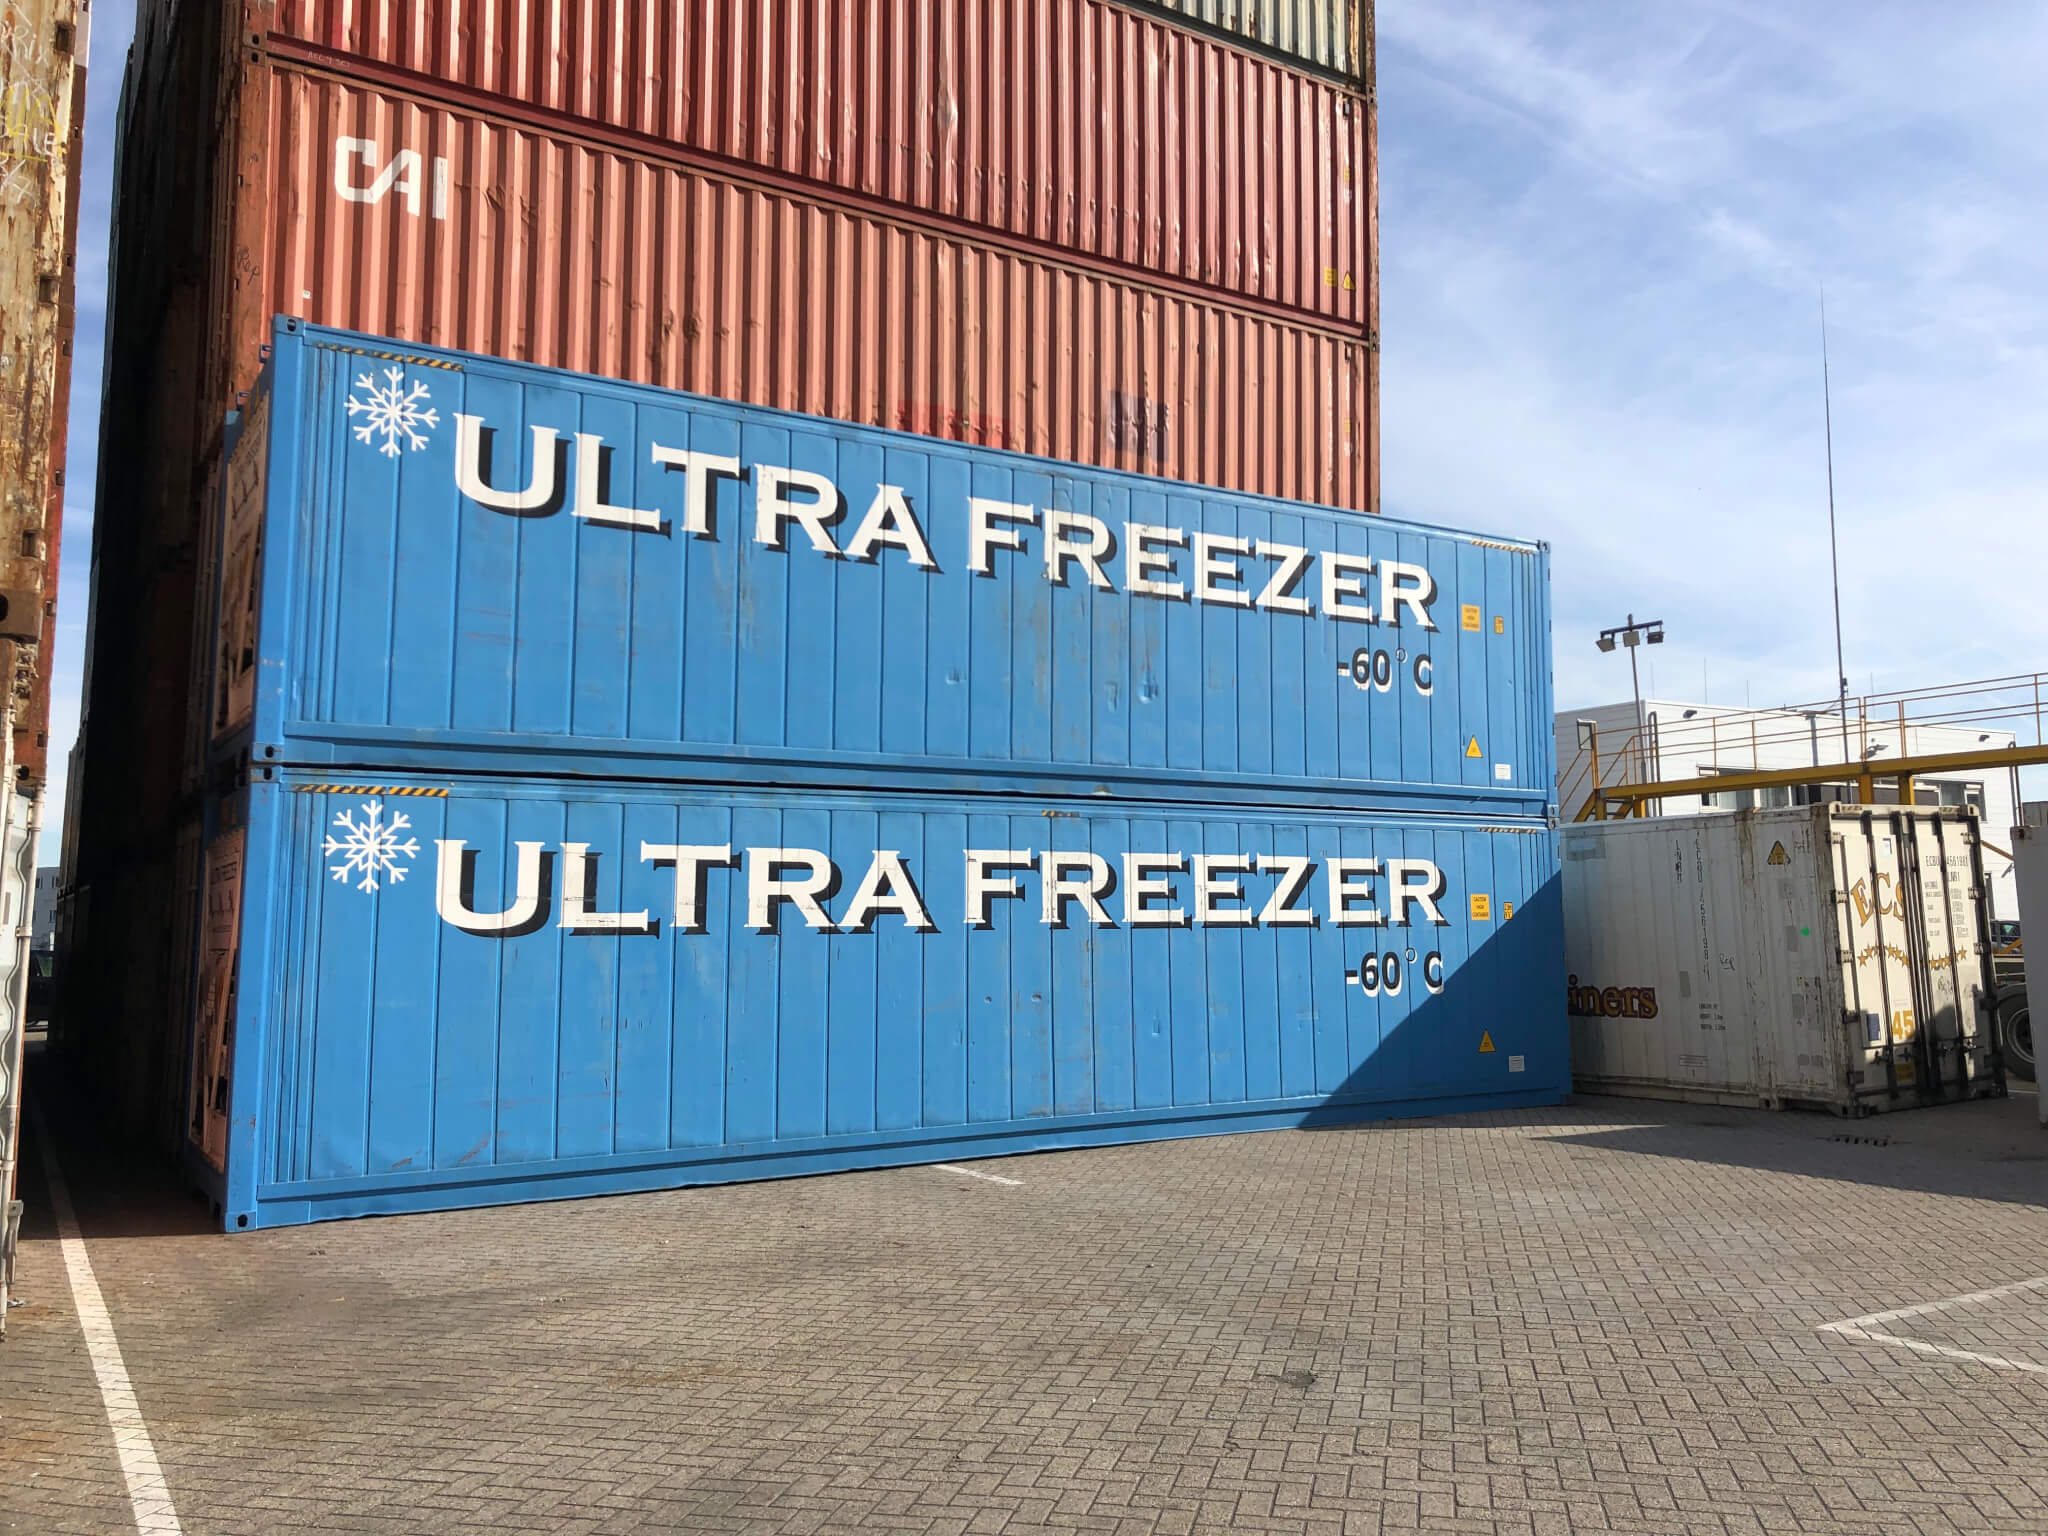 Ultra Freezer reefer containers te huur en te koop bij Alconet Containers Rotterdam